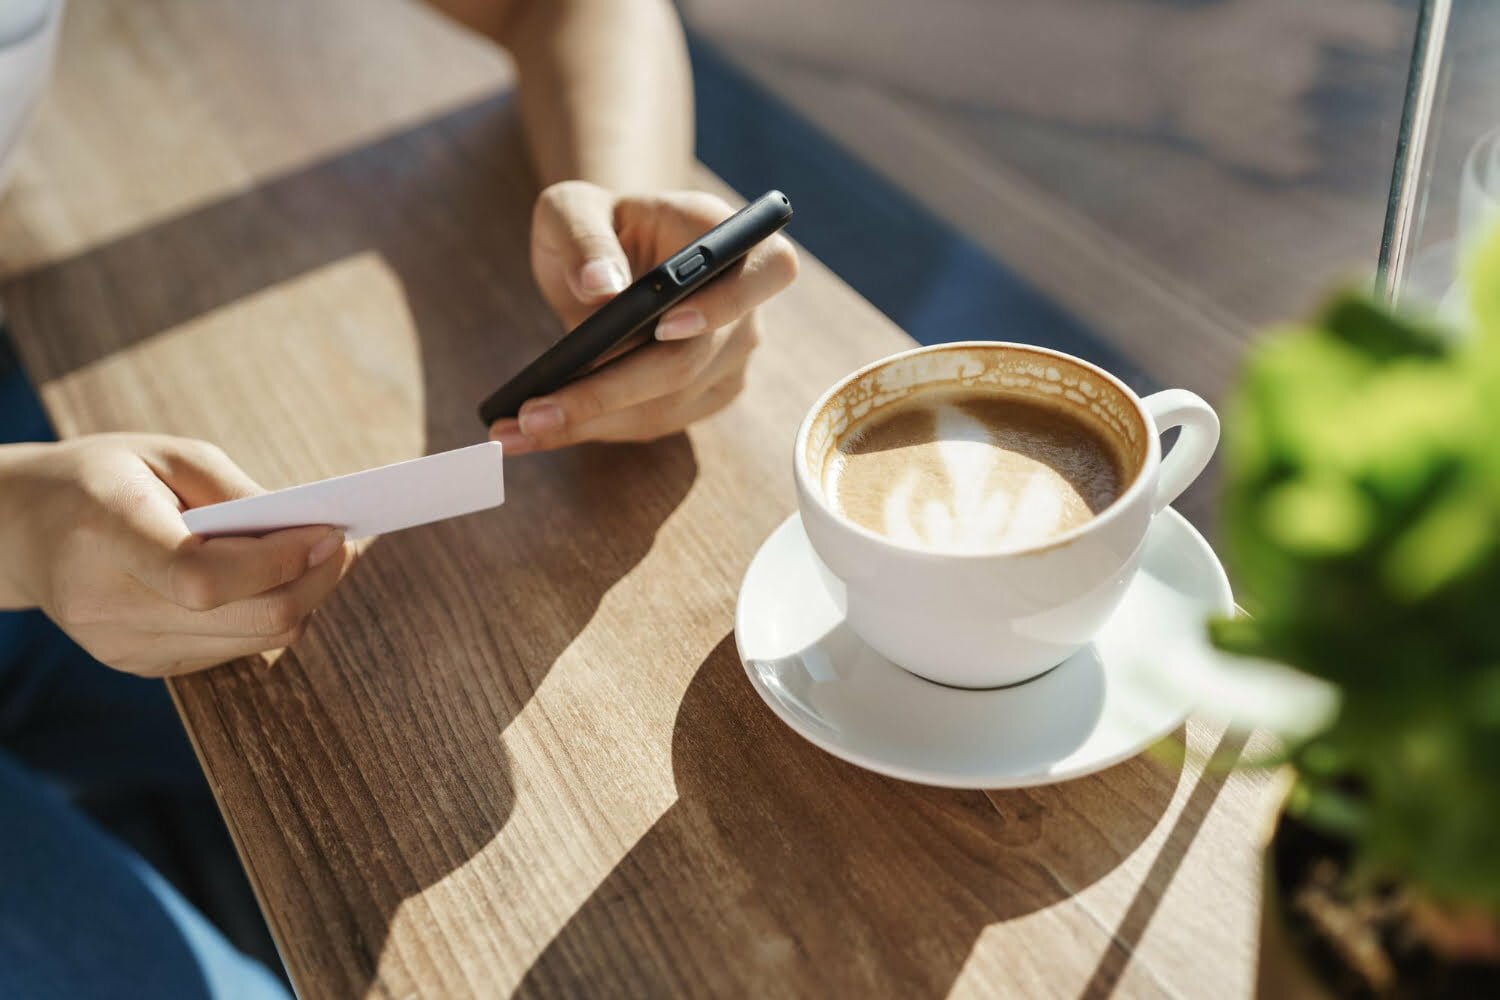 persona con una taza de café en una mesa y el celular en la mano